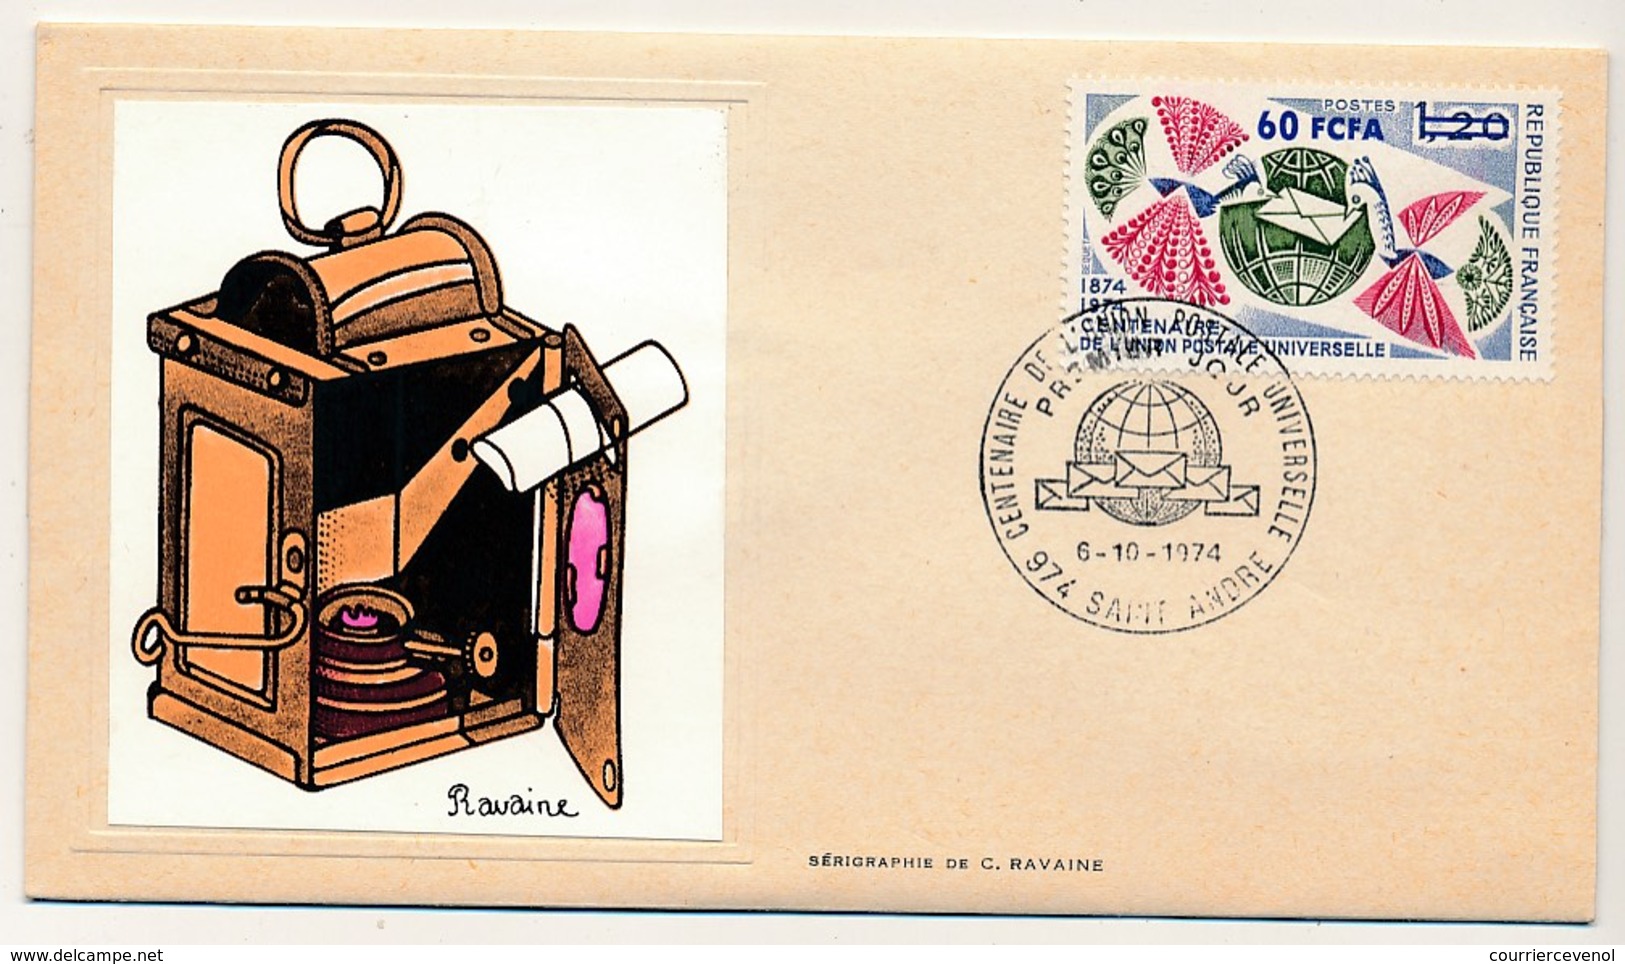 FRANCE-REUNION - Enveloppe FDC Thiaude - Centenaire De L'Union Postale Universelle - 6/10/1974 - Lettres & Documents